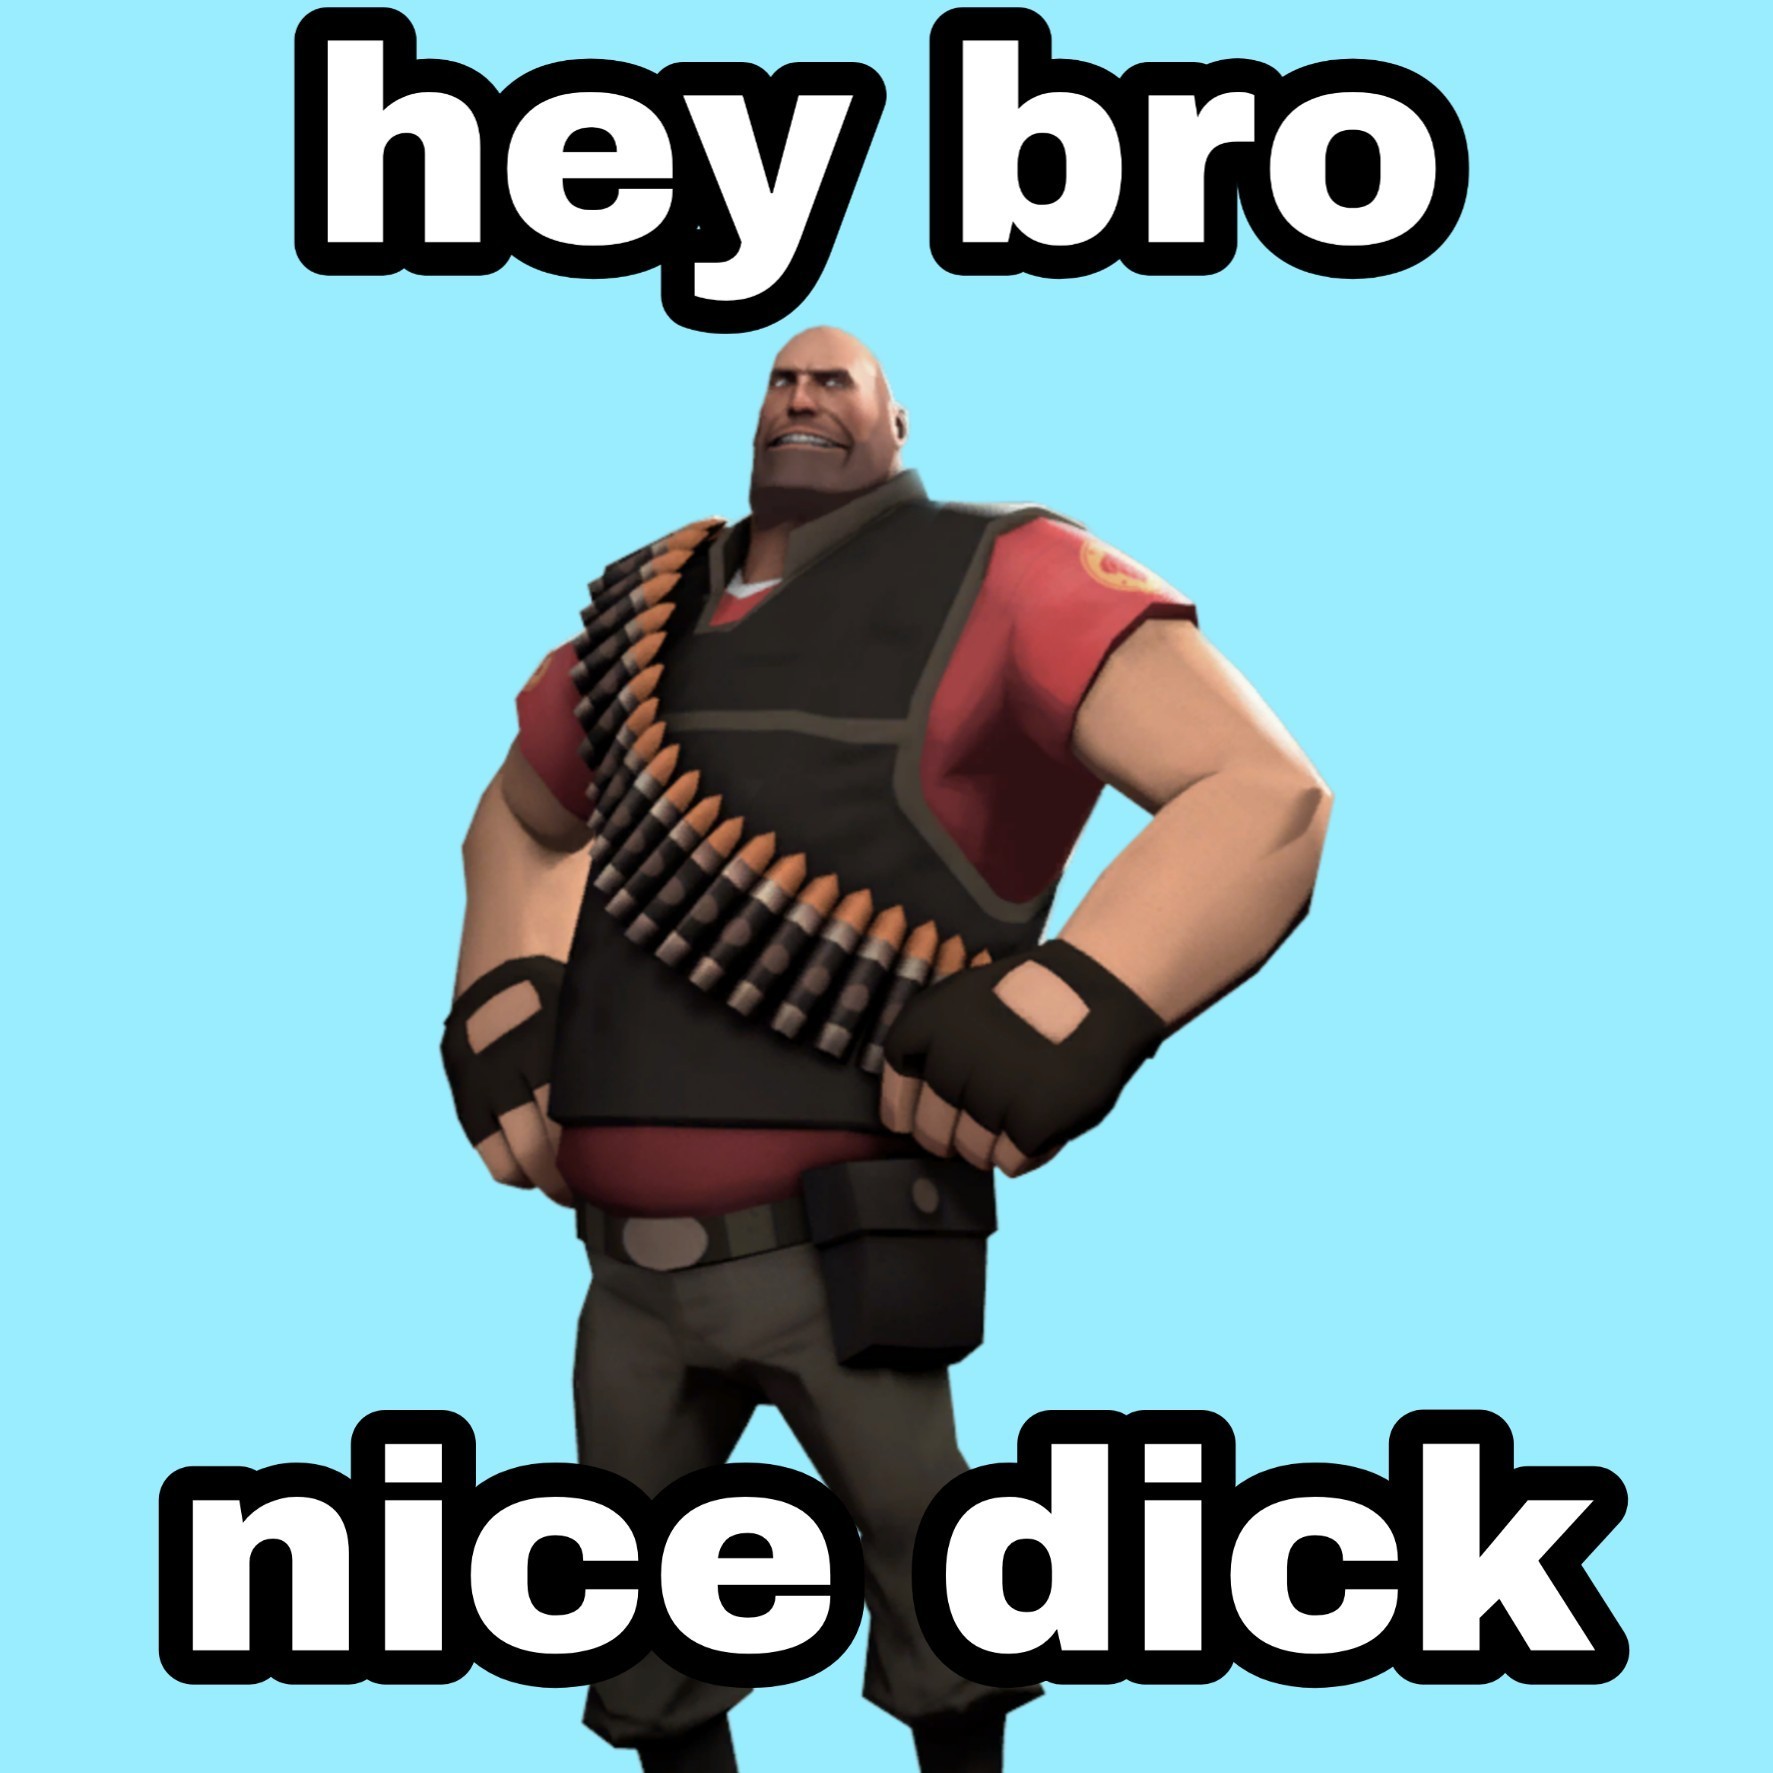 Hey bro, nice dick - meme